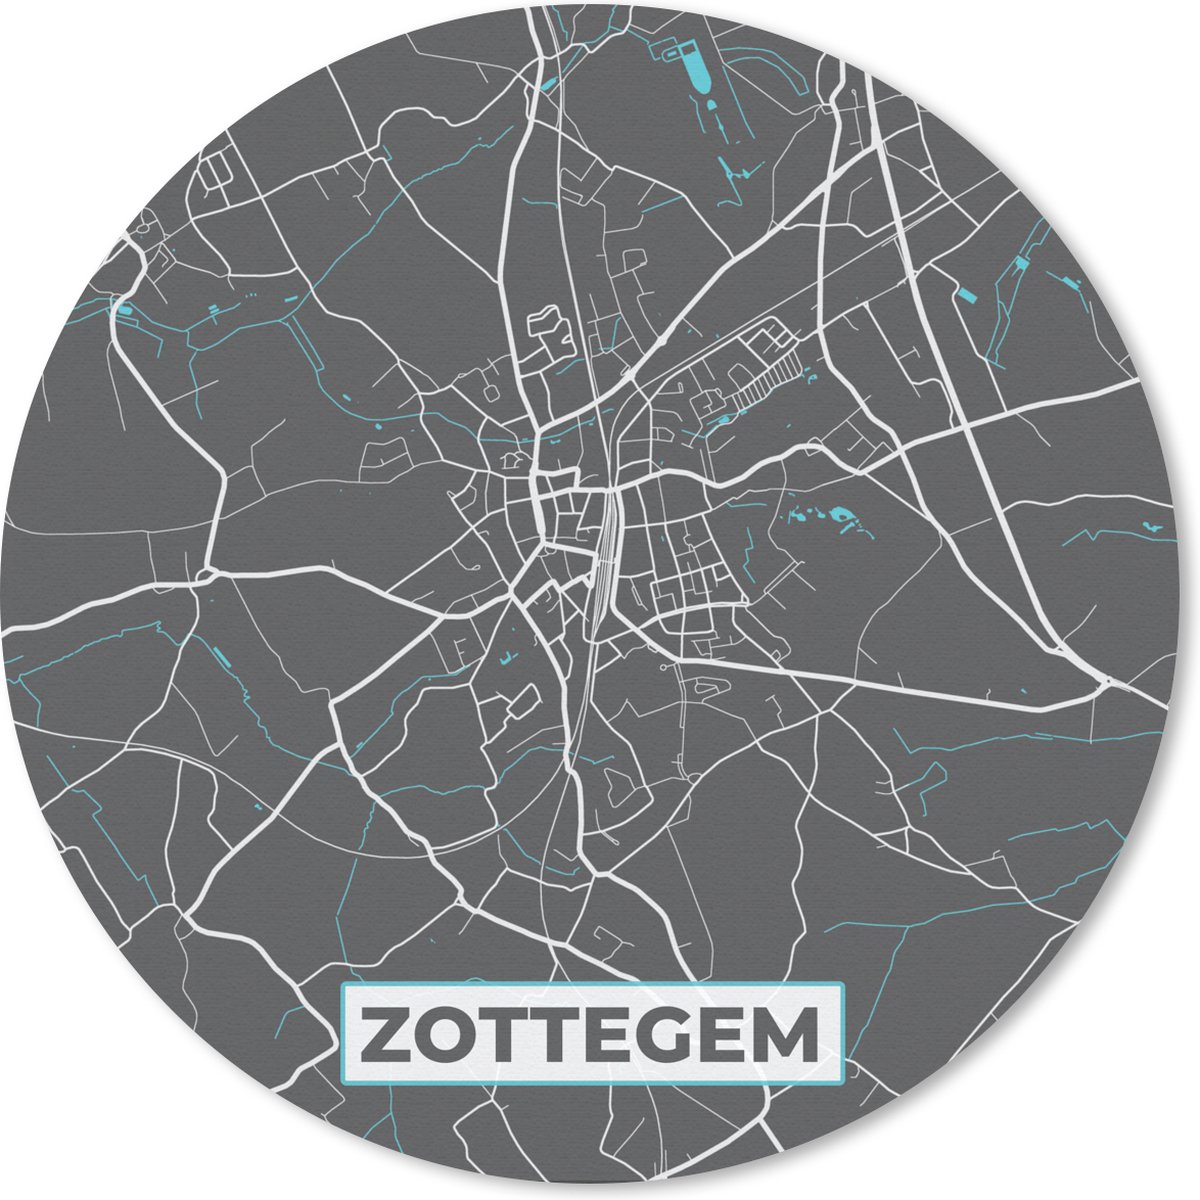 Muismat - Mousepad - Rond - België – Zottegem – Stadskaart – Kaart – Blauw – Plattegrond - 50x50 cm - Ronde muismat